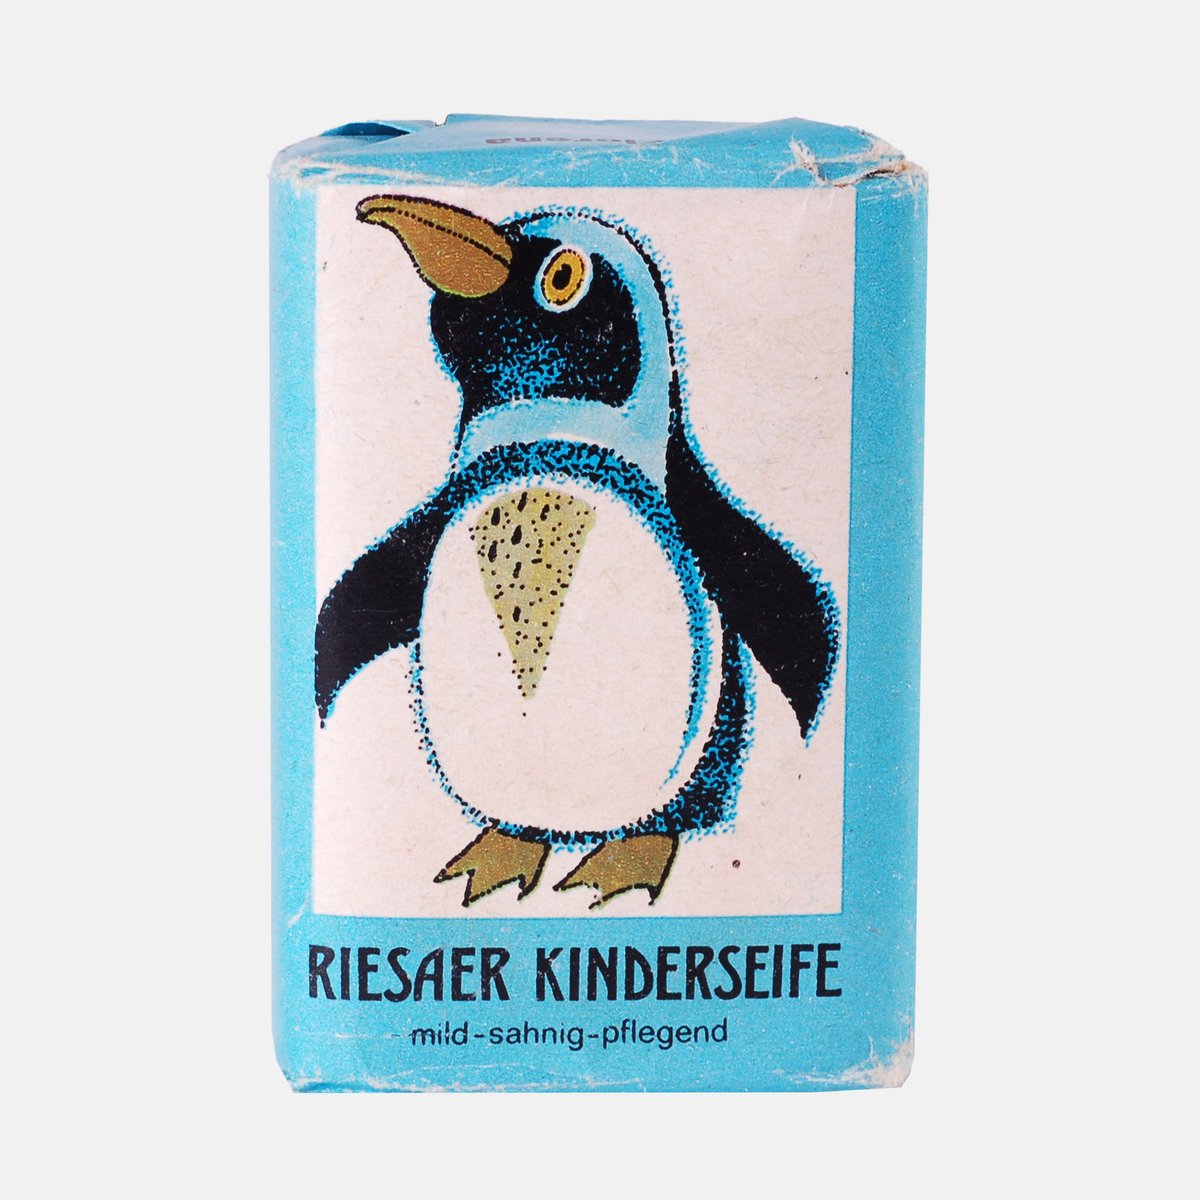 Der heutige #Weltpinguintag soll das Bewusstsein für den Erhalt dieser Arten schärfen. Wir zeigen euch deshalb eine Risaer Kinderseife aus unserer Sammlung mit einem Pinguin-Aufdruck. #ddr #museum #berlin #pinguin #seife ddr-museum.de/de/objects/100…